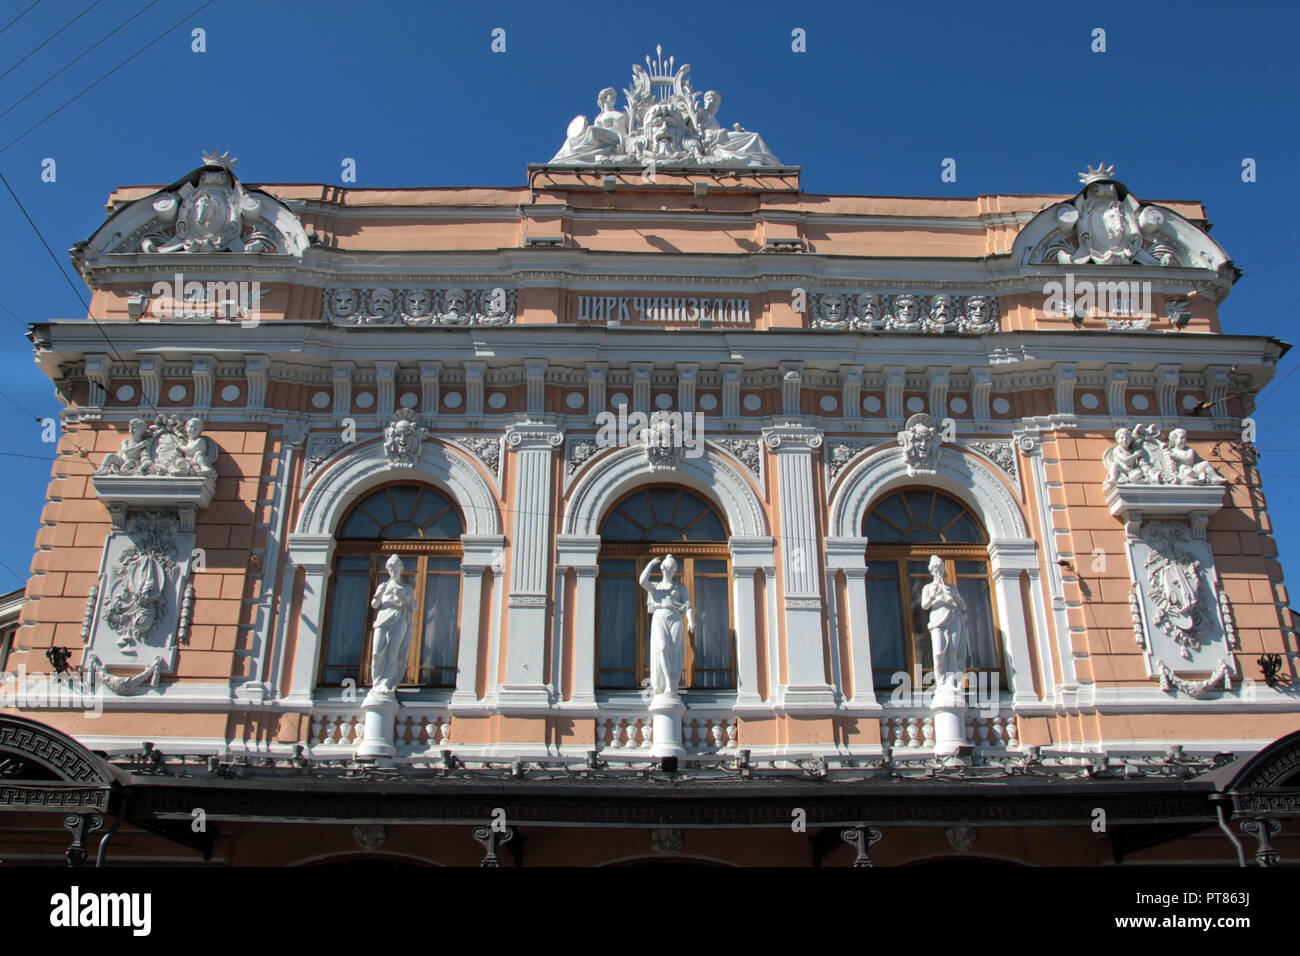 Viele der Gebäude in St. Petersburg sind architektonisch beeindruckende mit Fassaden, die Filigrane, elegante, makellose, bunten und schwer mit Statuen, Bögen, Säulen, Figuren, Arkaden und schönen Stuckarbeiten. Dies ist einer von ihnen. Stockfoto